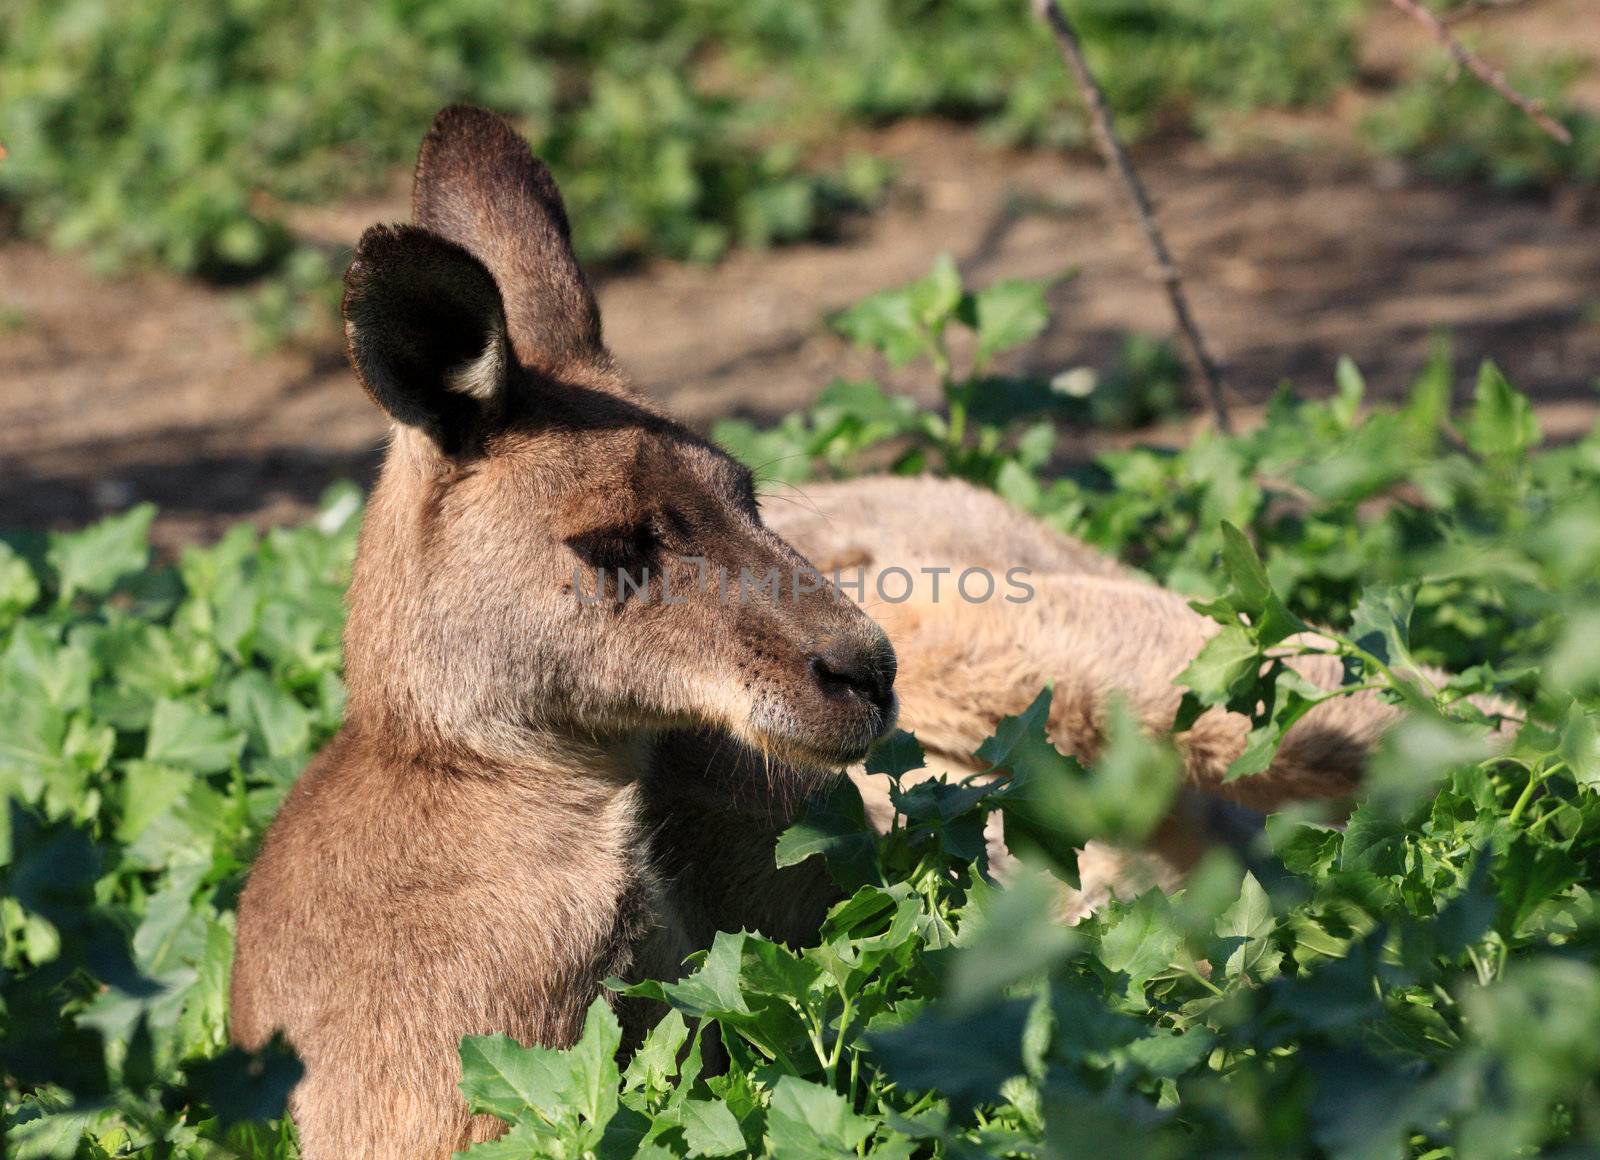 kangaroo by fedlog